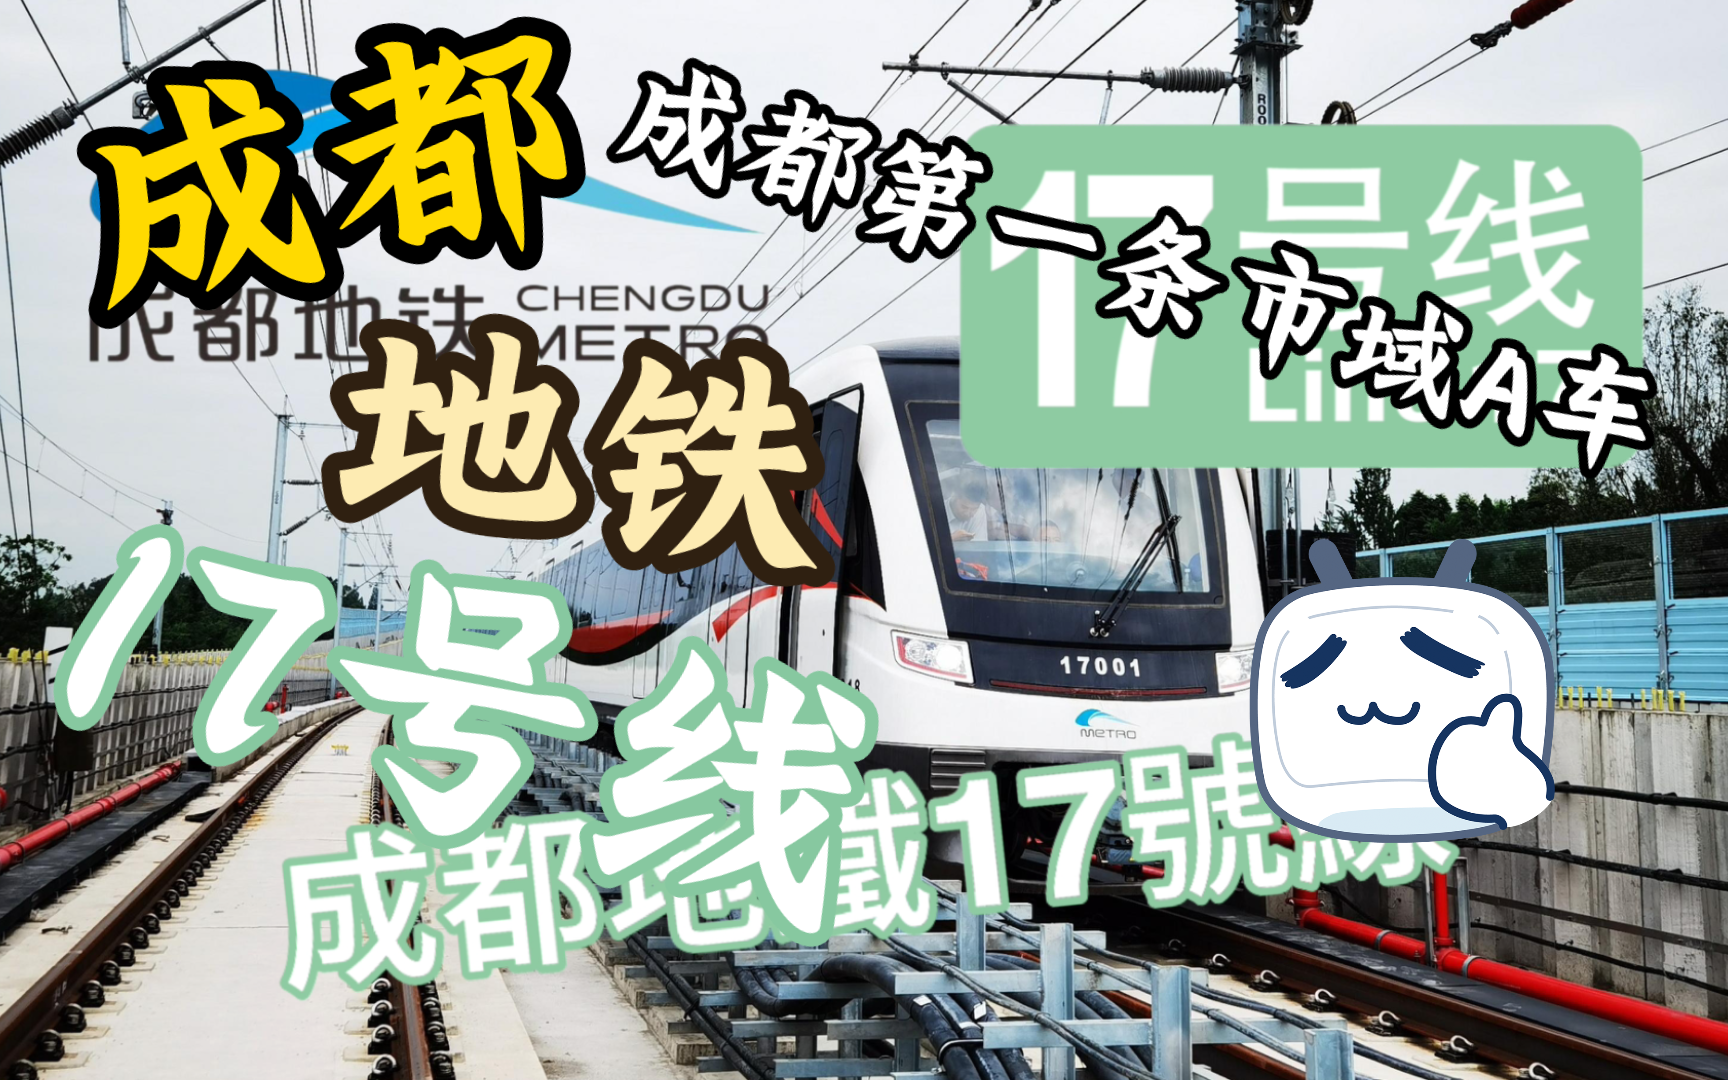 【成都地鐵】成都地铁17号线(已建成通车)丨17号线列车真容,成都首条